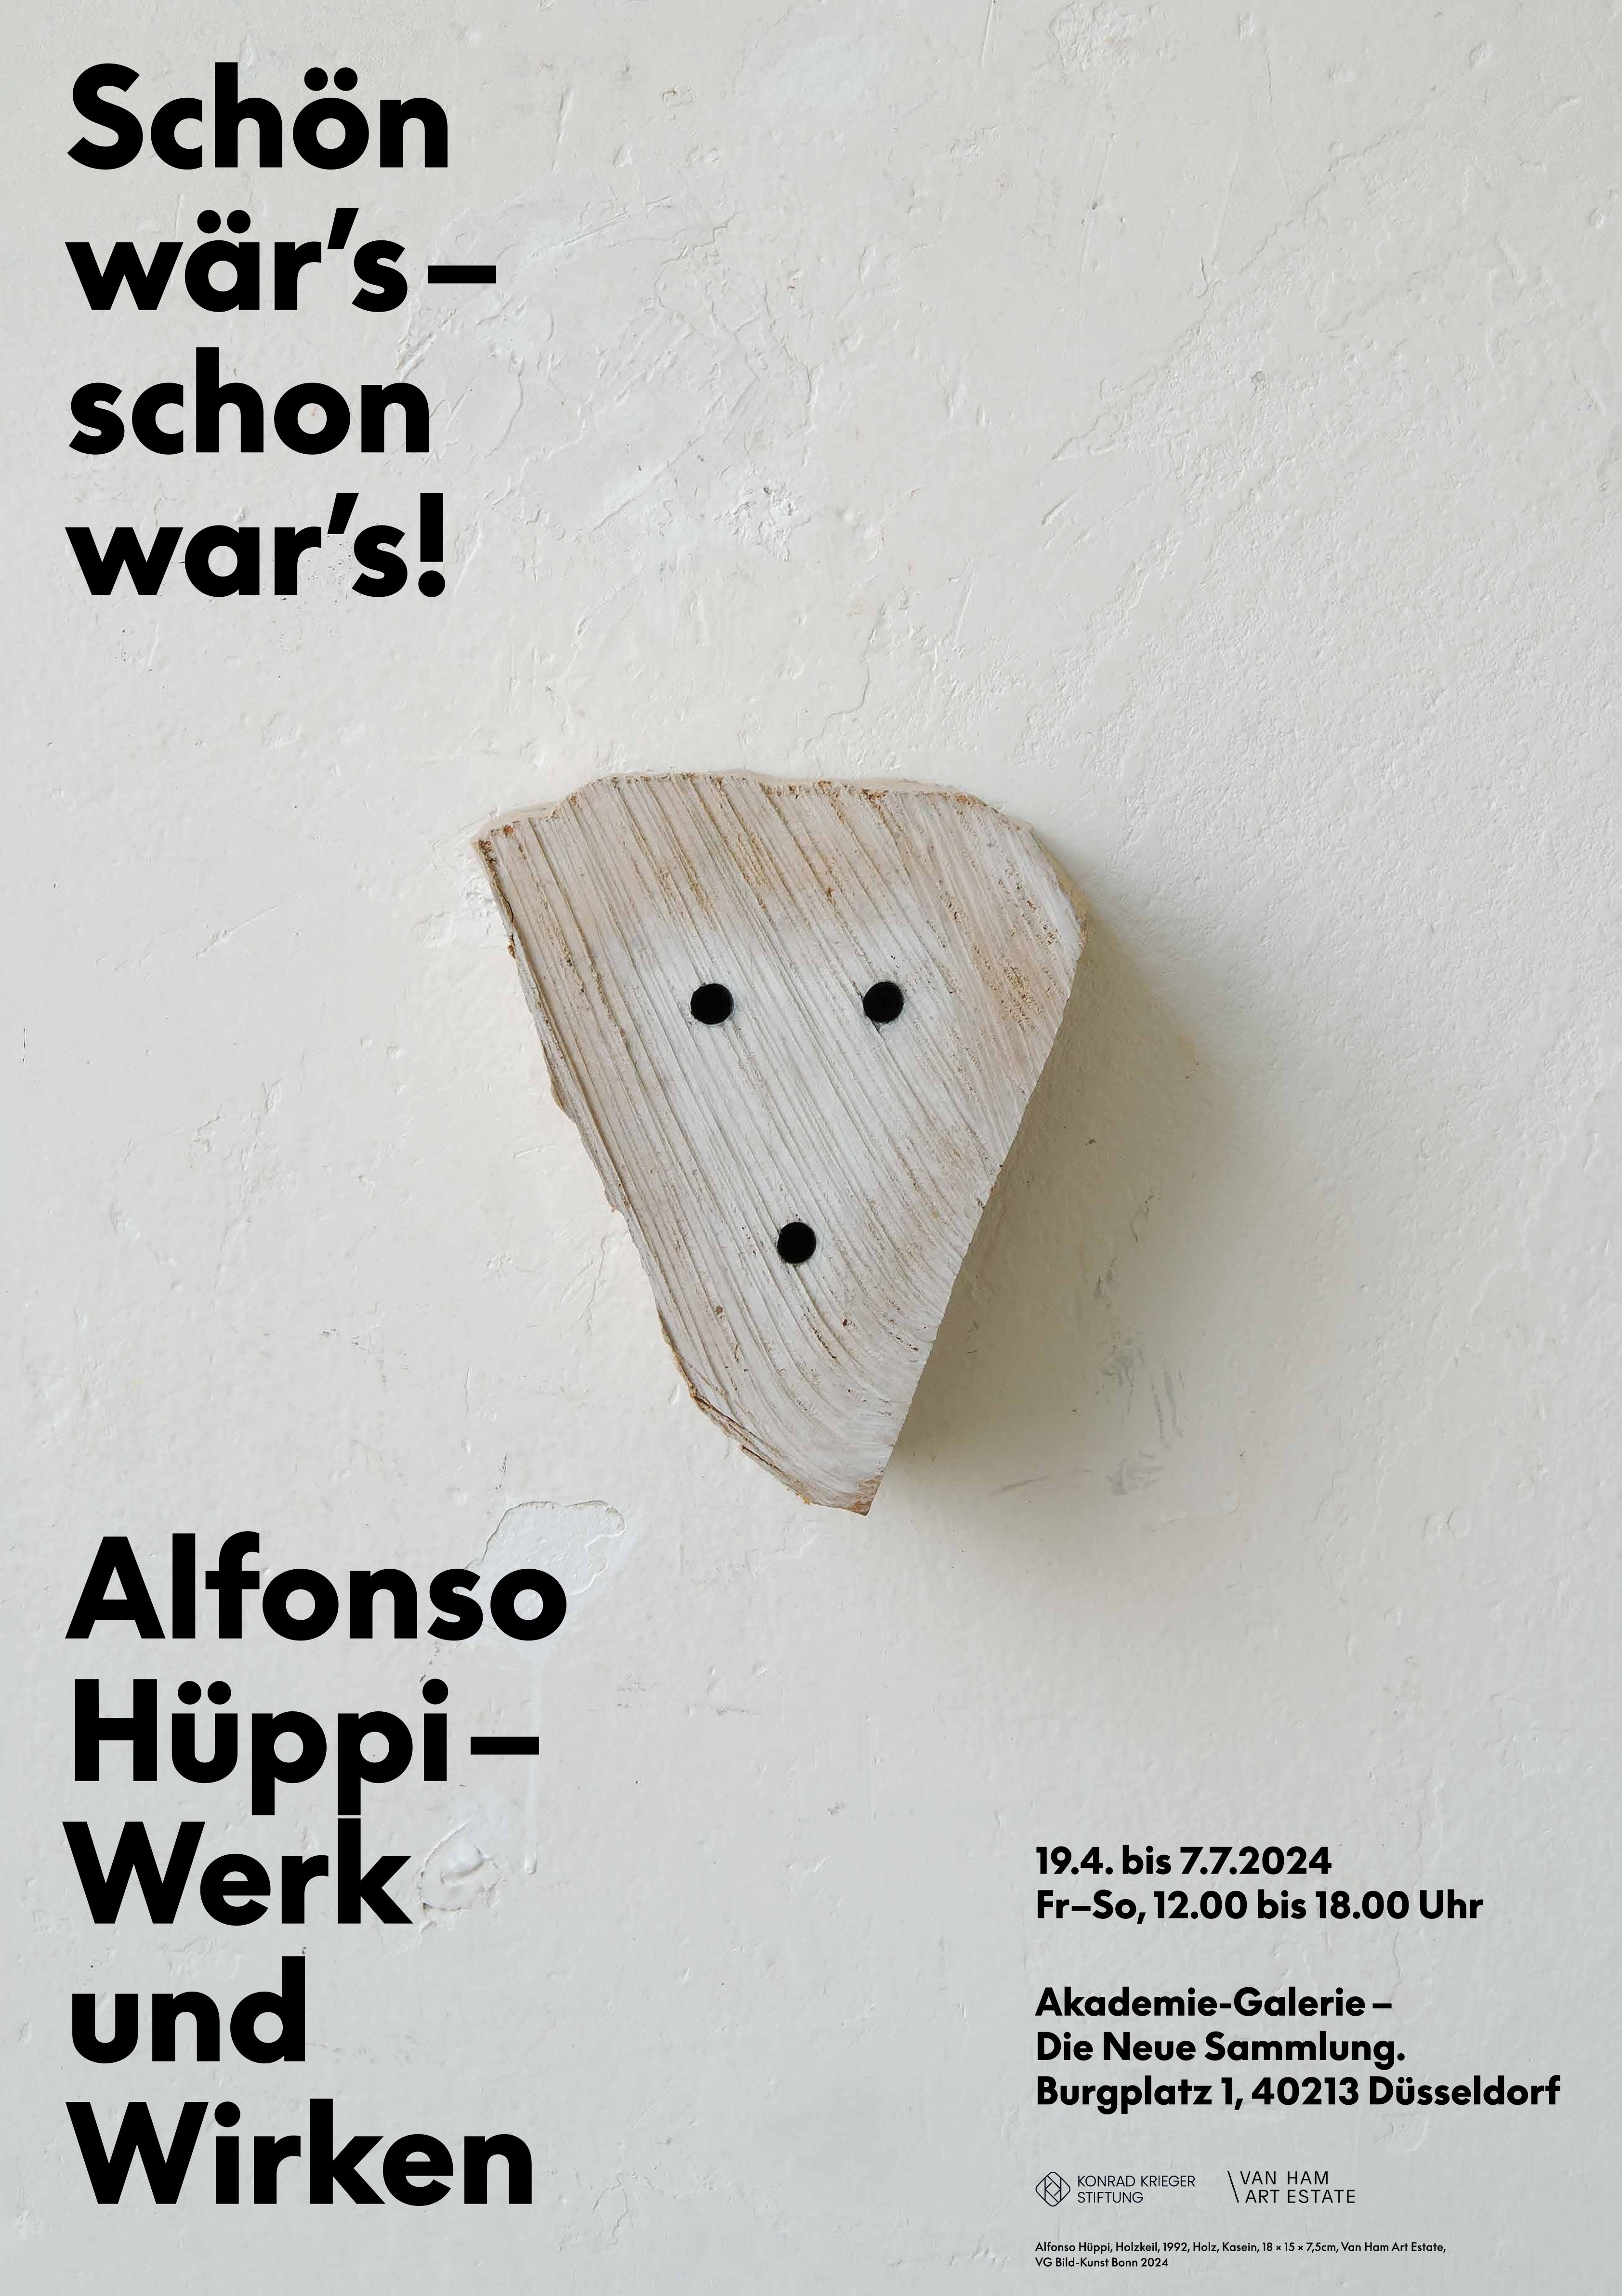 Graues Poster mit schwarzer Schrift "Schön wär's - schon war's! Alfonso Hüppi - Werk und Wirken". Im Zentrum des Posters ist ein dreieckiges Stück Holz zusehen, in das drei Nägel gehämmert wurden, sodass diese wie ein Gesicht wirken.